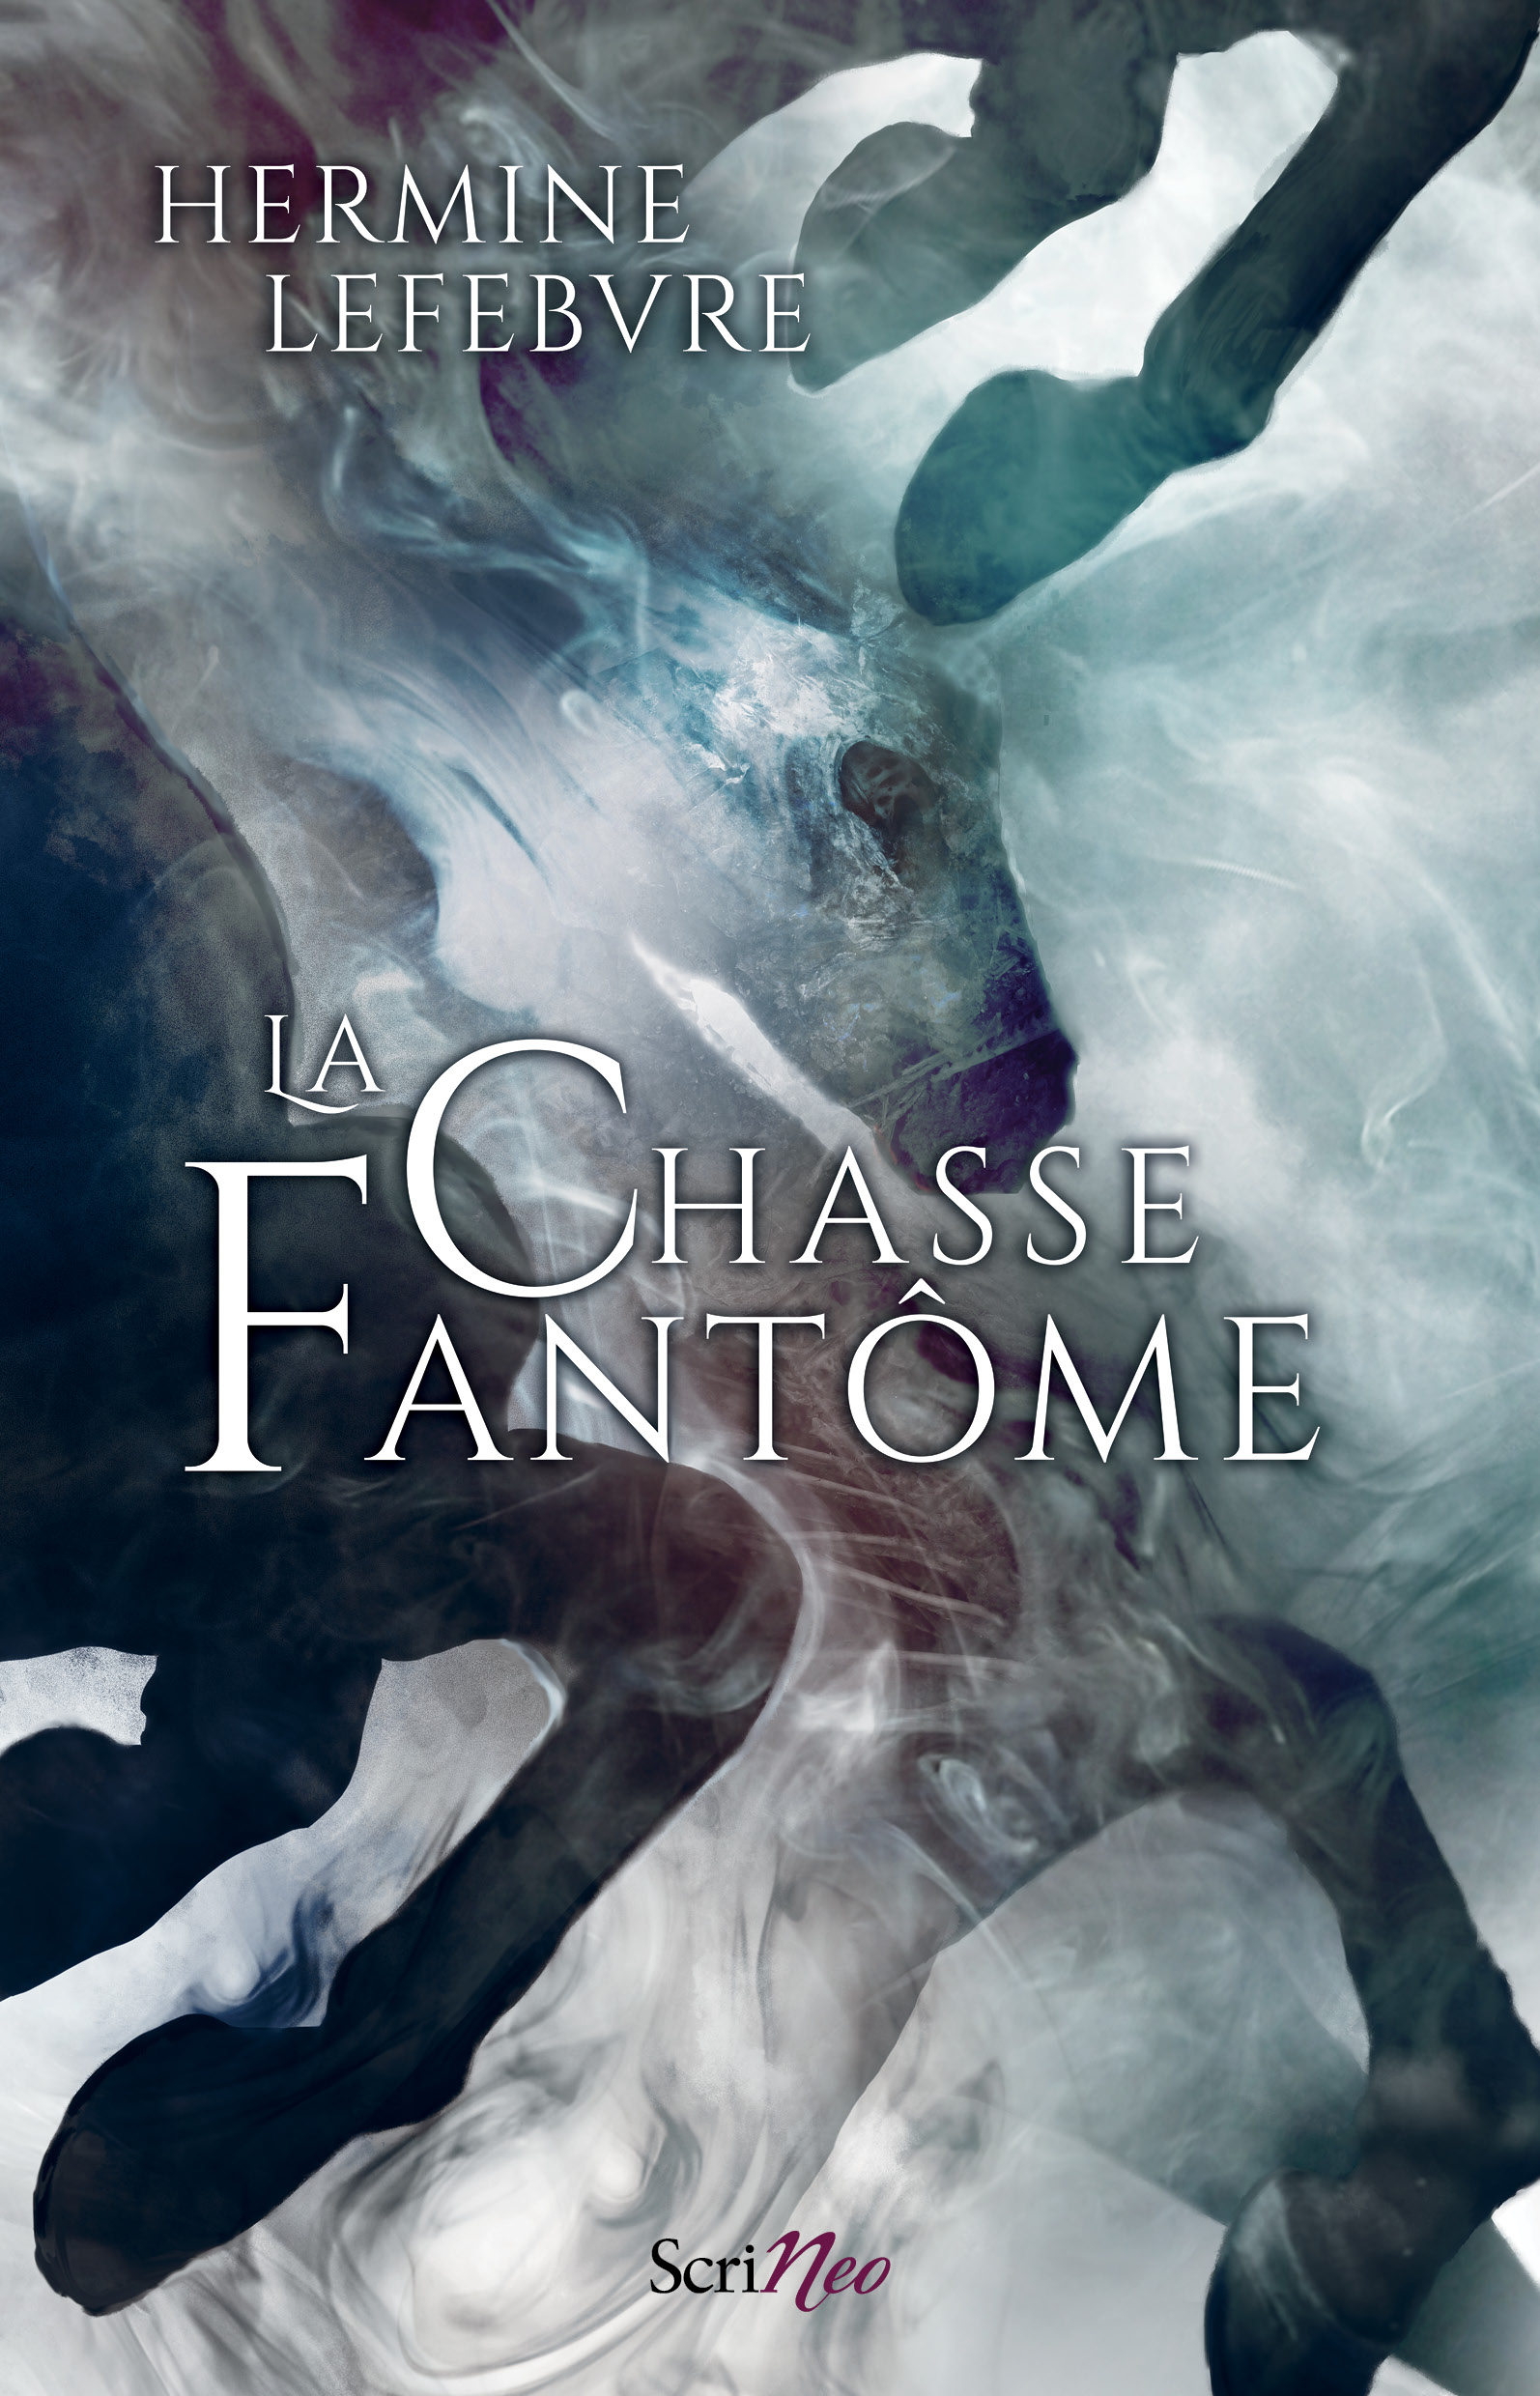 Couverture du roman "La Chasse fantôme", représentant une horde de cavaliers fantômes galopant sur un fond brumeux.